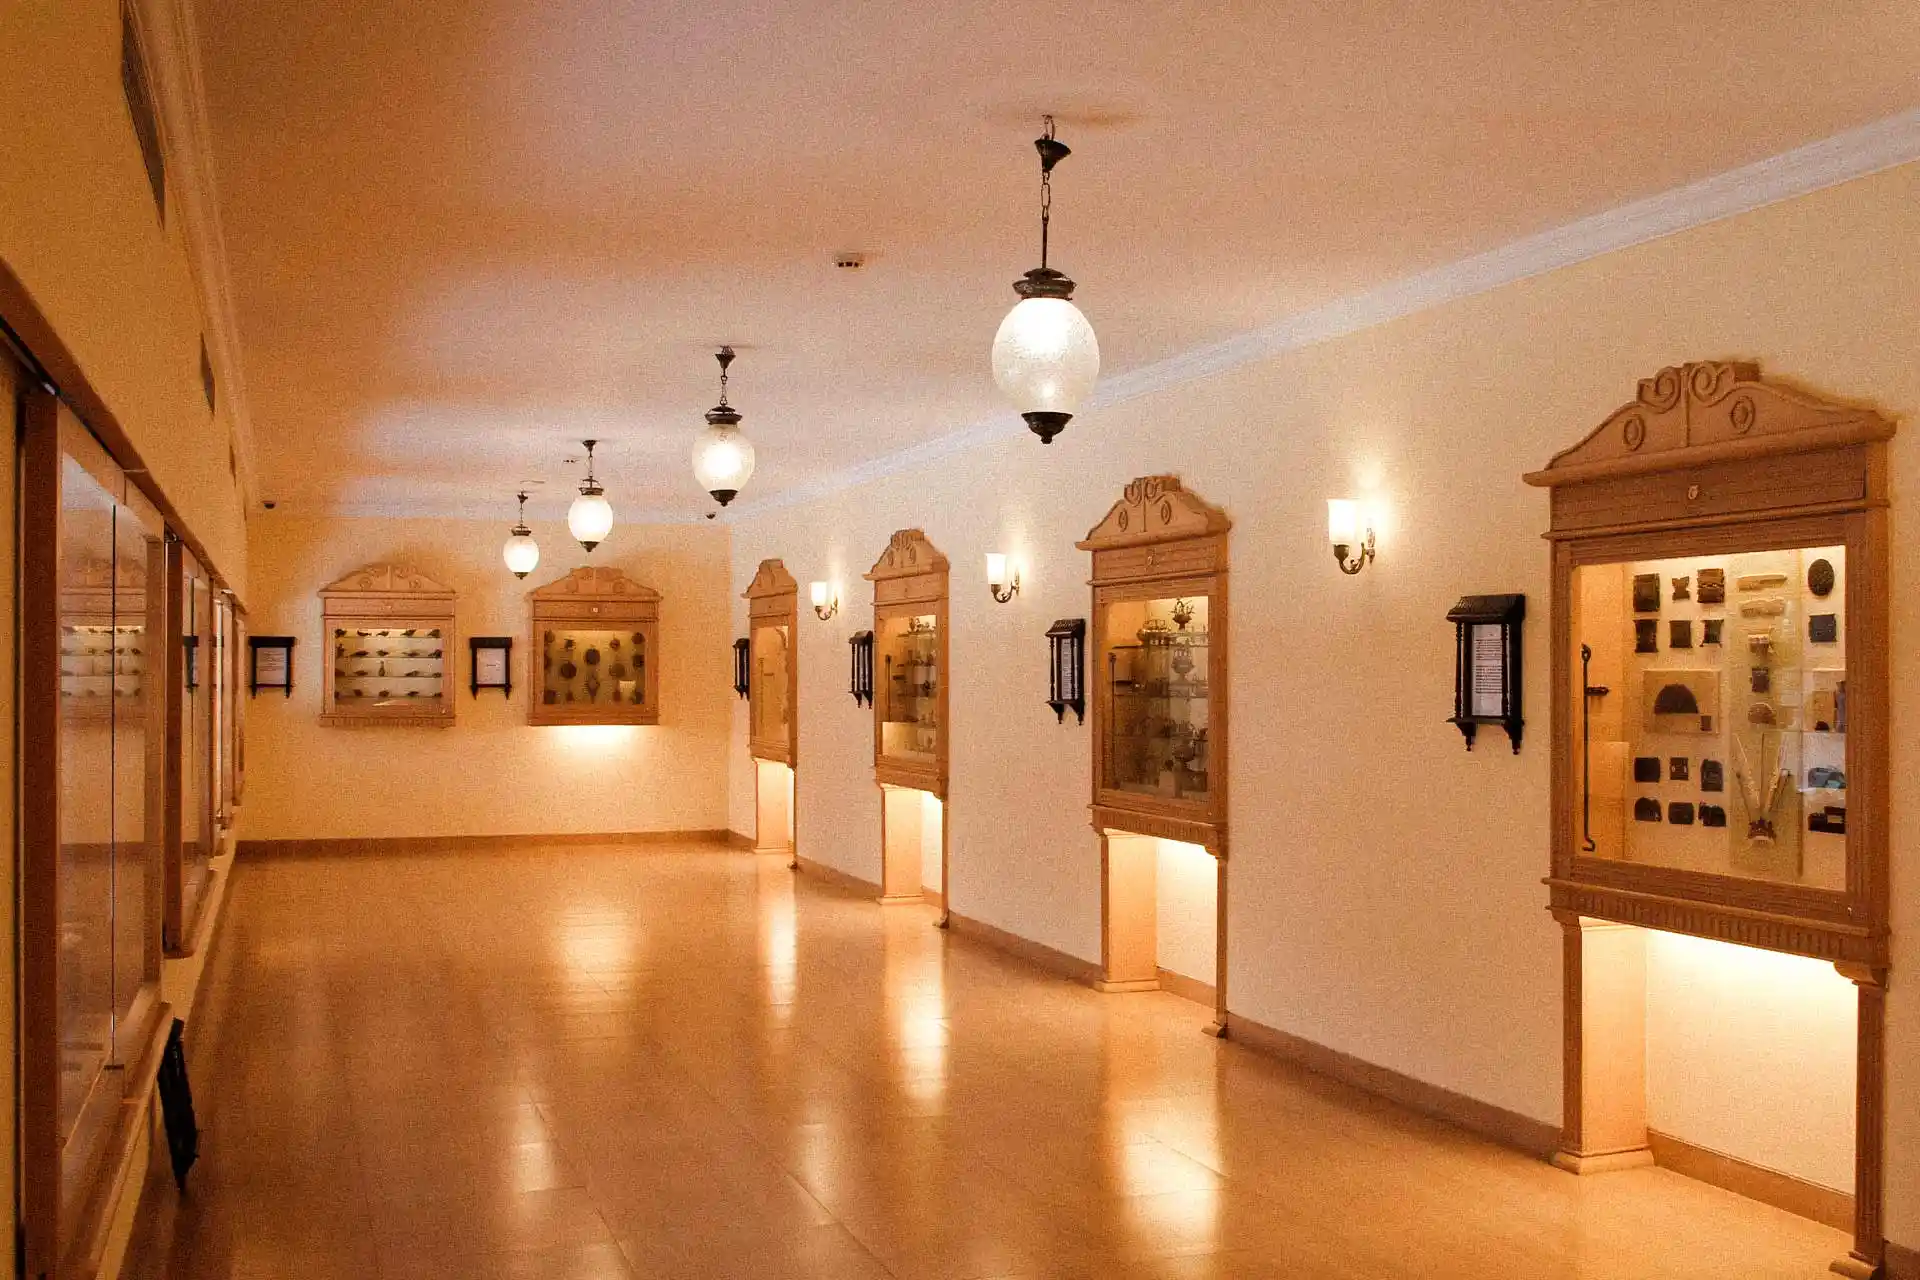 The Aai Museum in Pune